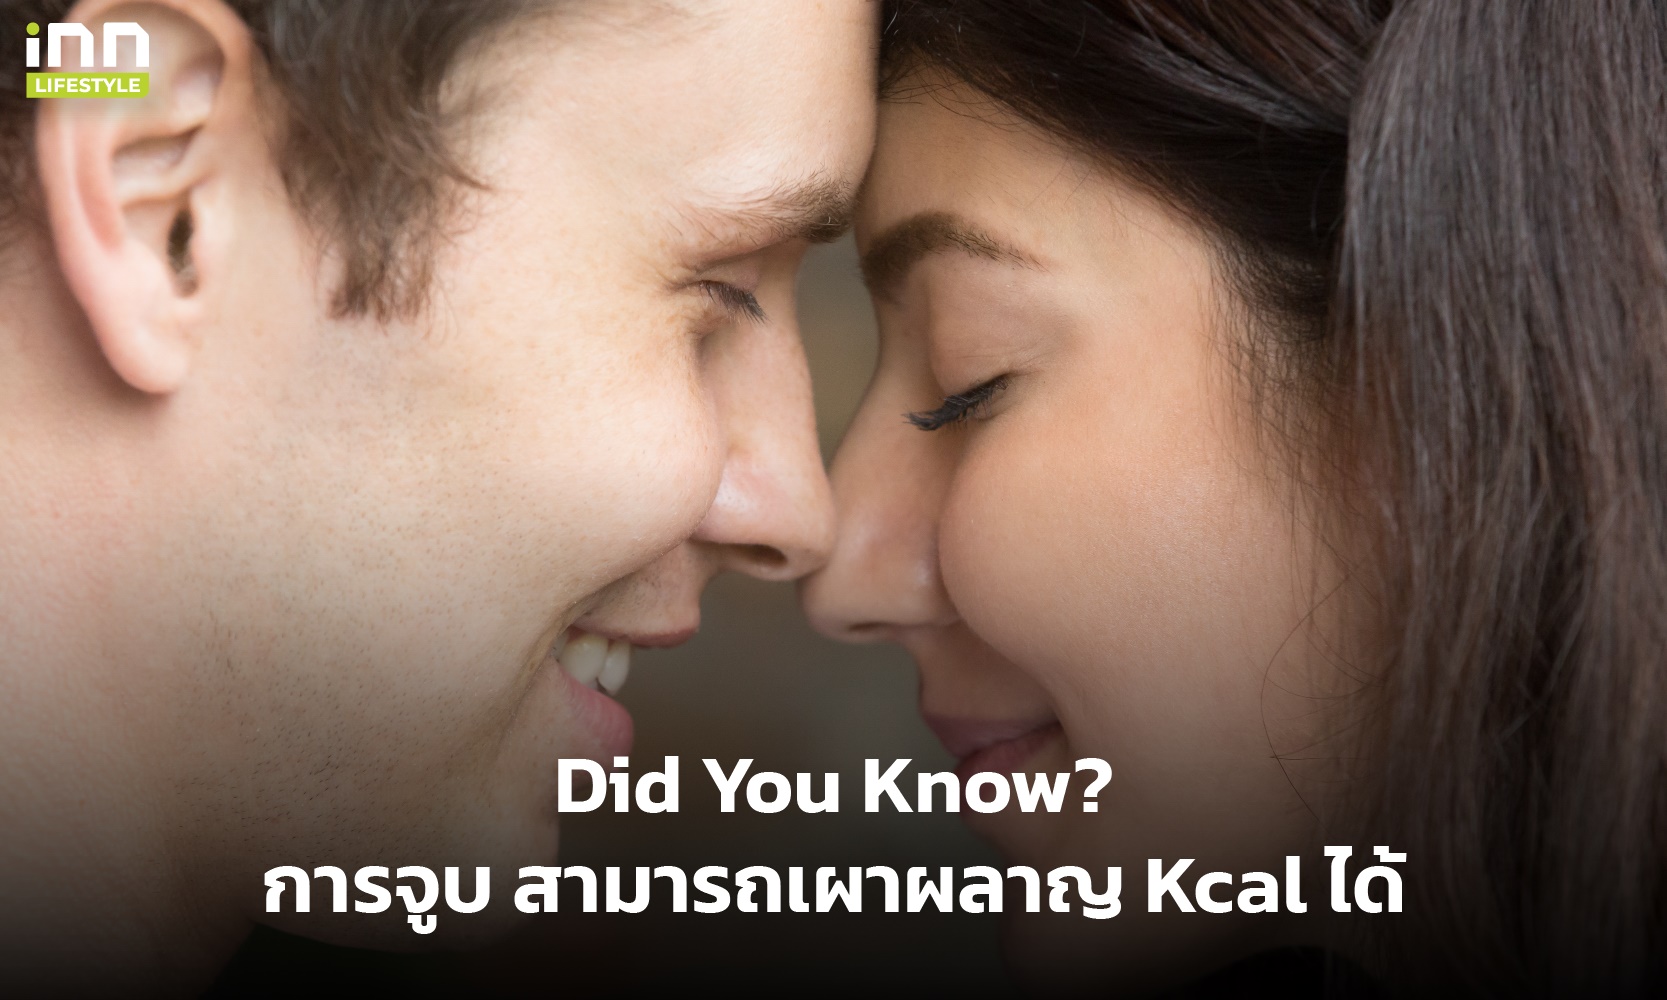 การจูบ สามารถเผาผลาญ Kcal ได้ แถมช่วยใบหน้ากระชับได้ด้วย